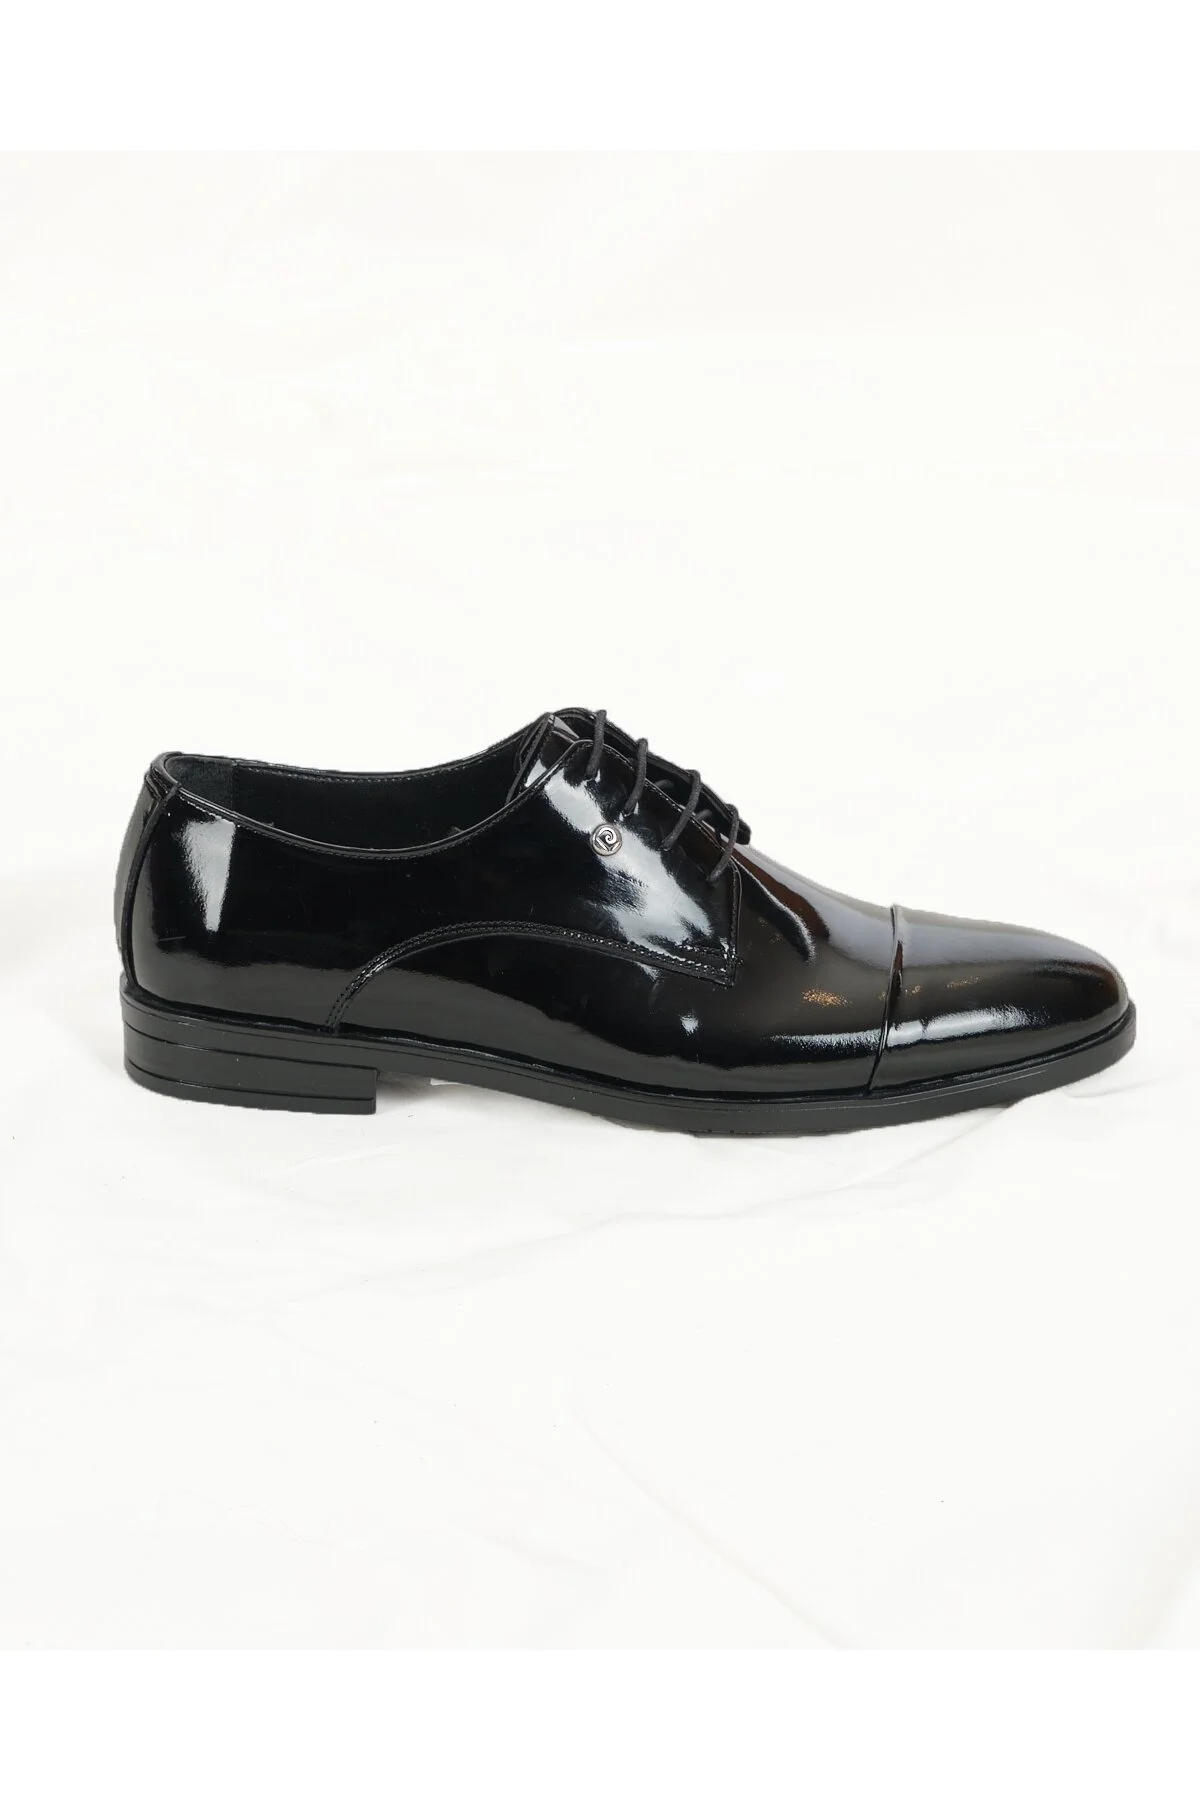 PİERRE CARDİN - Erkek Klasik Ayakkabı-36311-Siyah Rugan